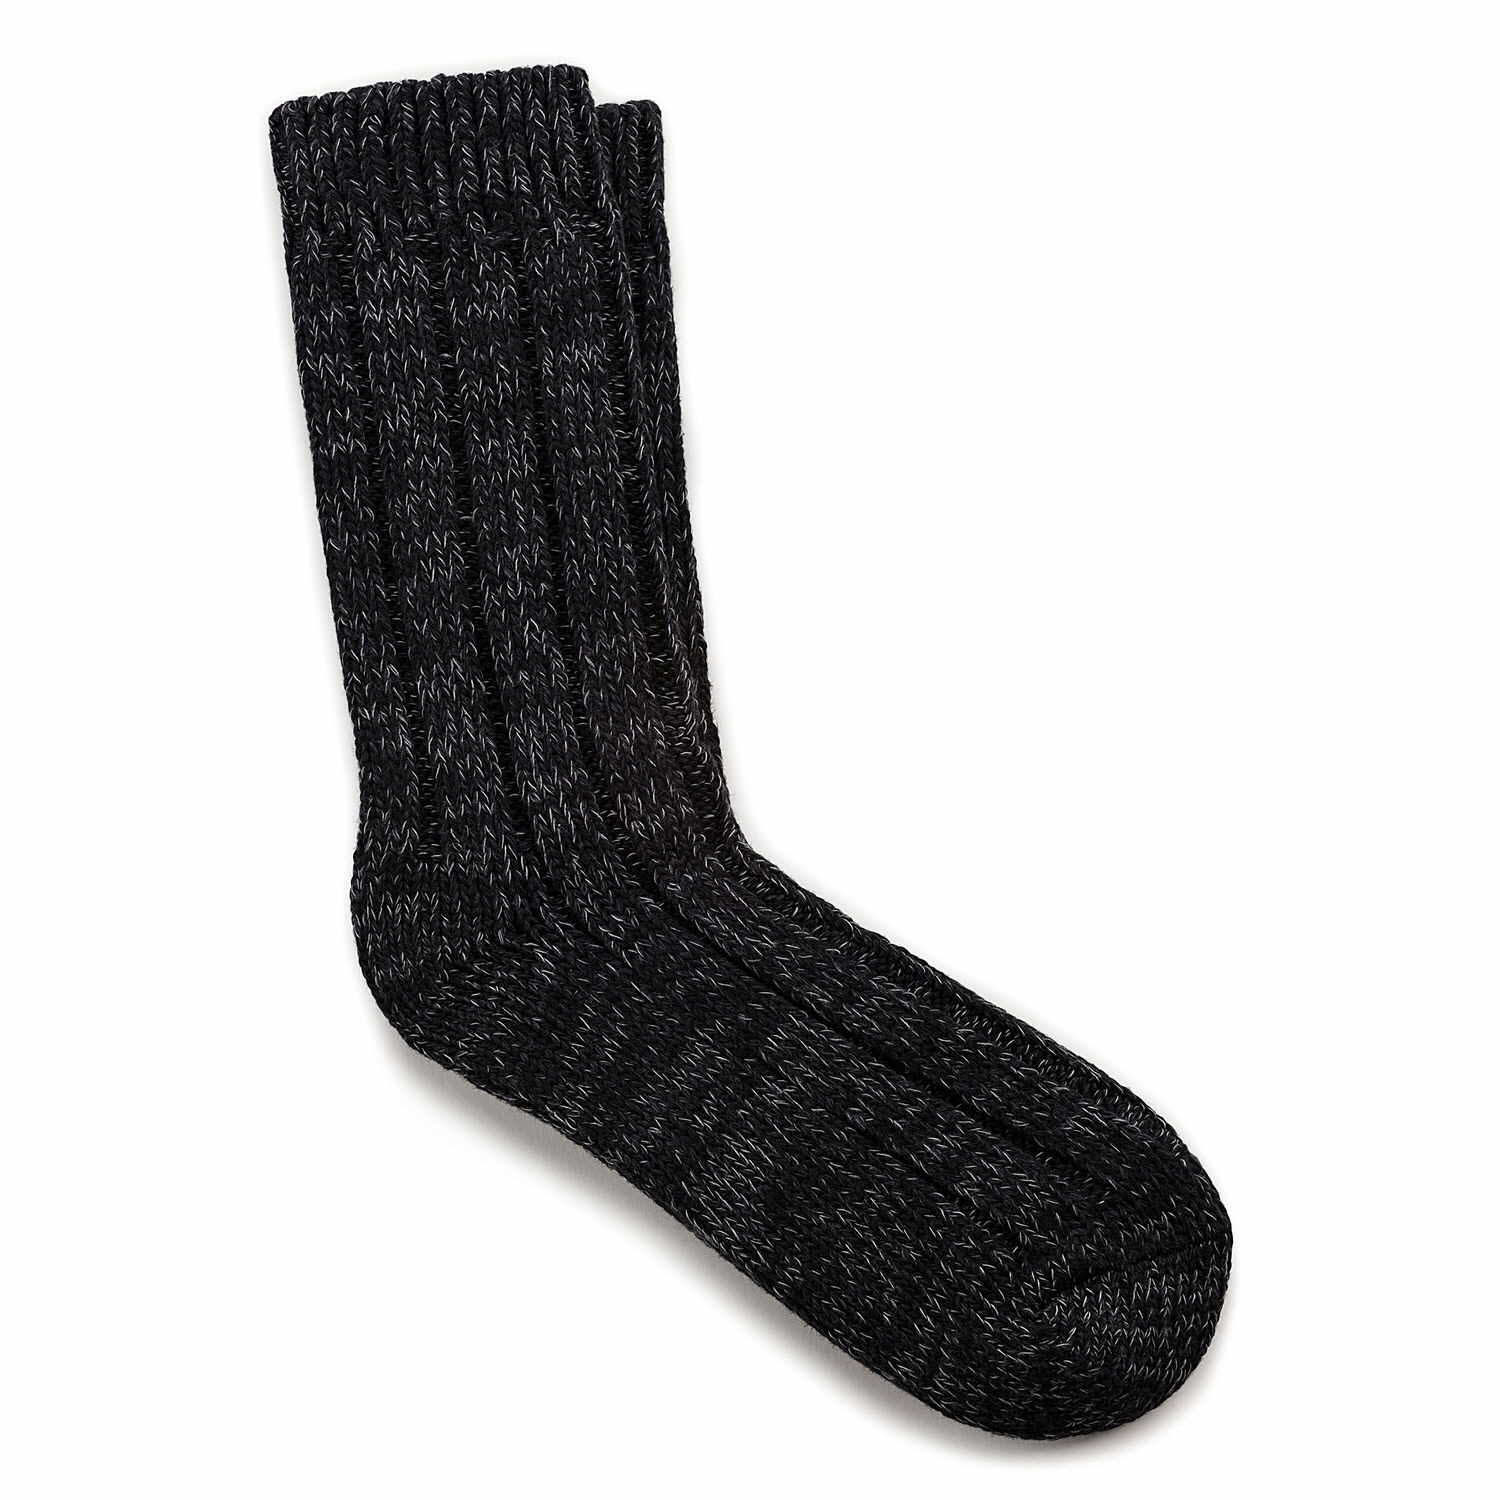 Birkenstock Strümpfe/Socken sonstiges 1002443 Cotton Twist Women Black